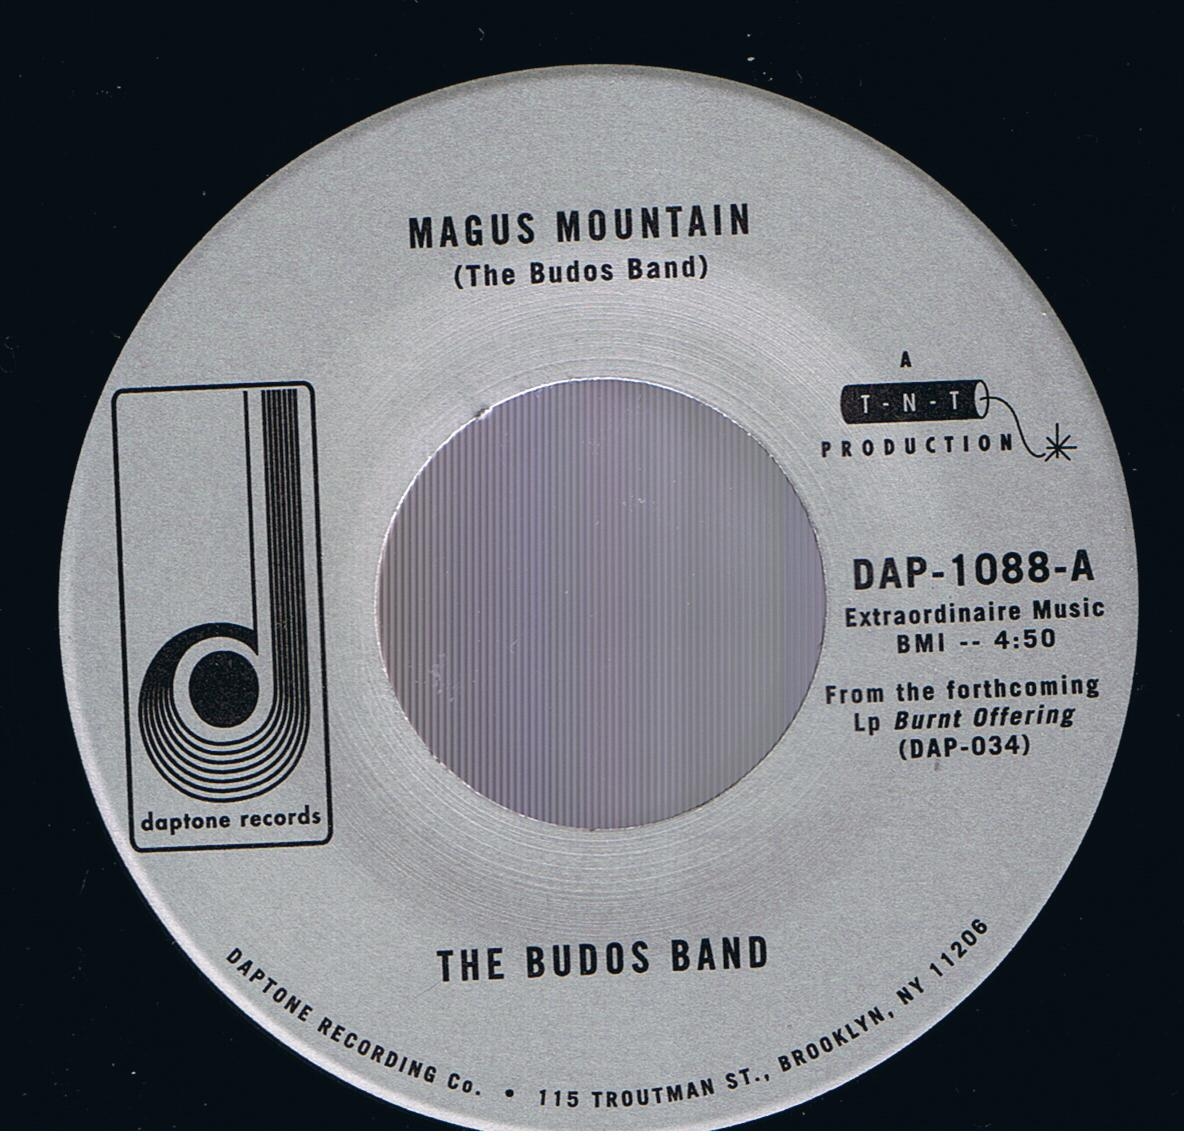 The Budos Band - Magus Mountain / The Budos Band - Vertigo (7")